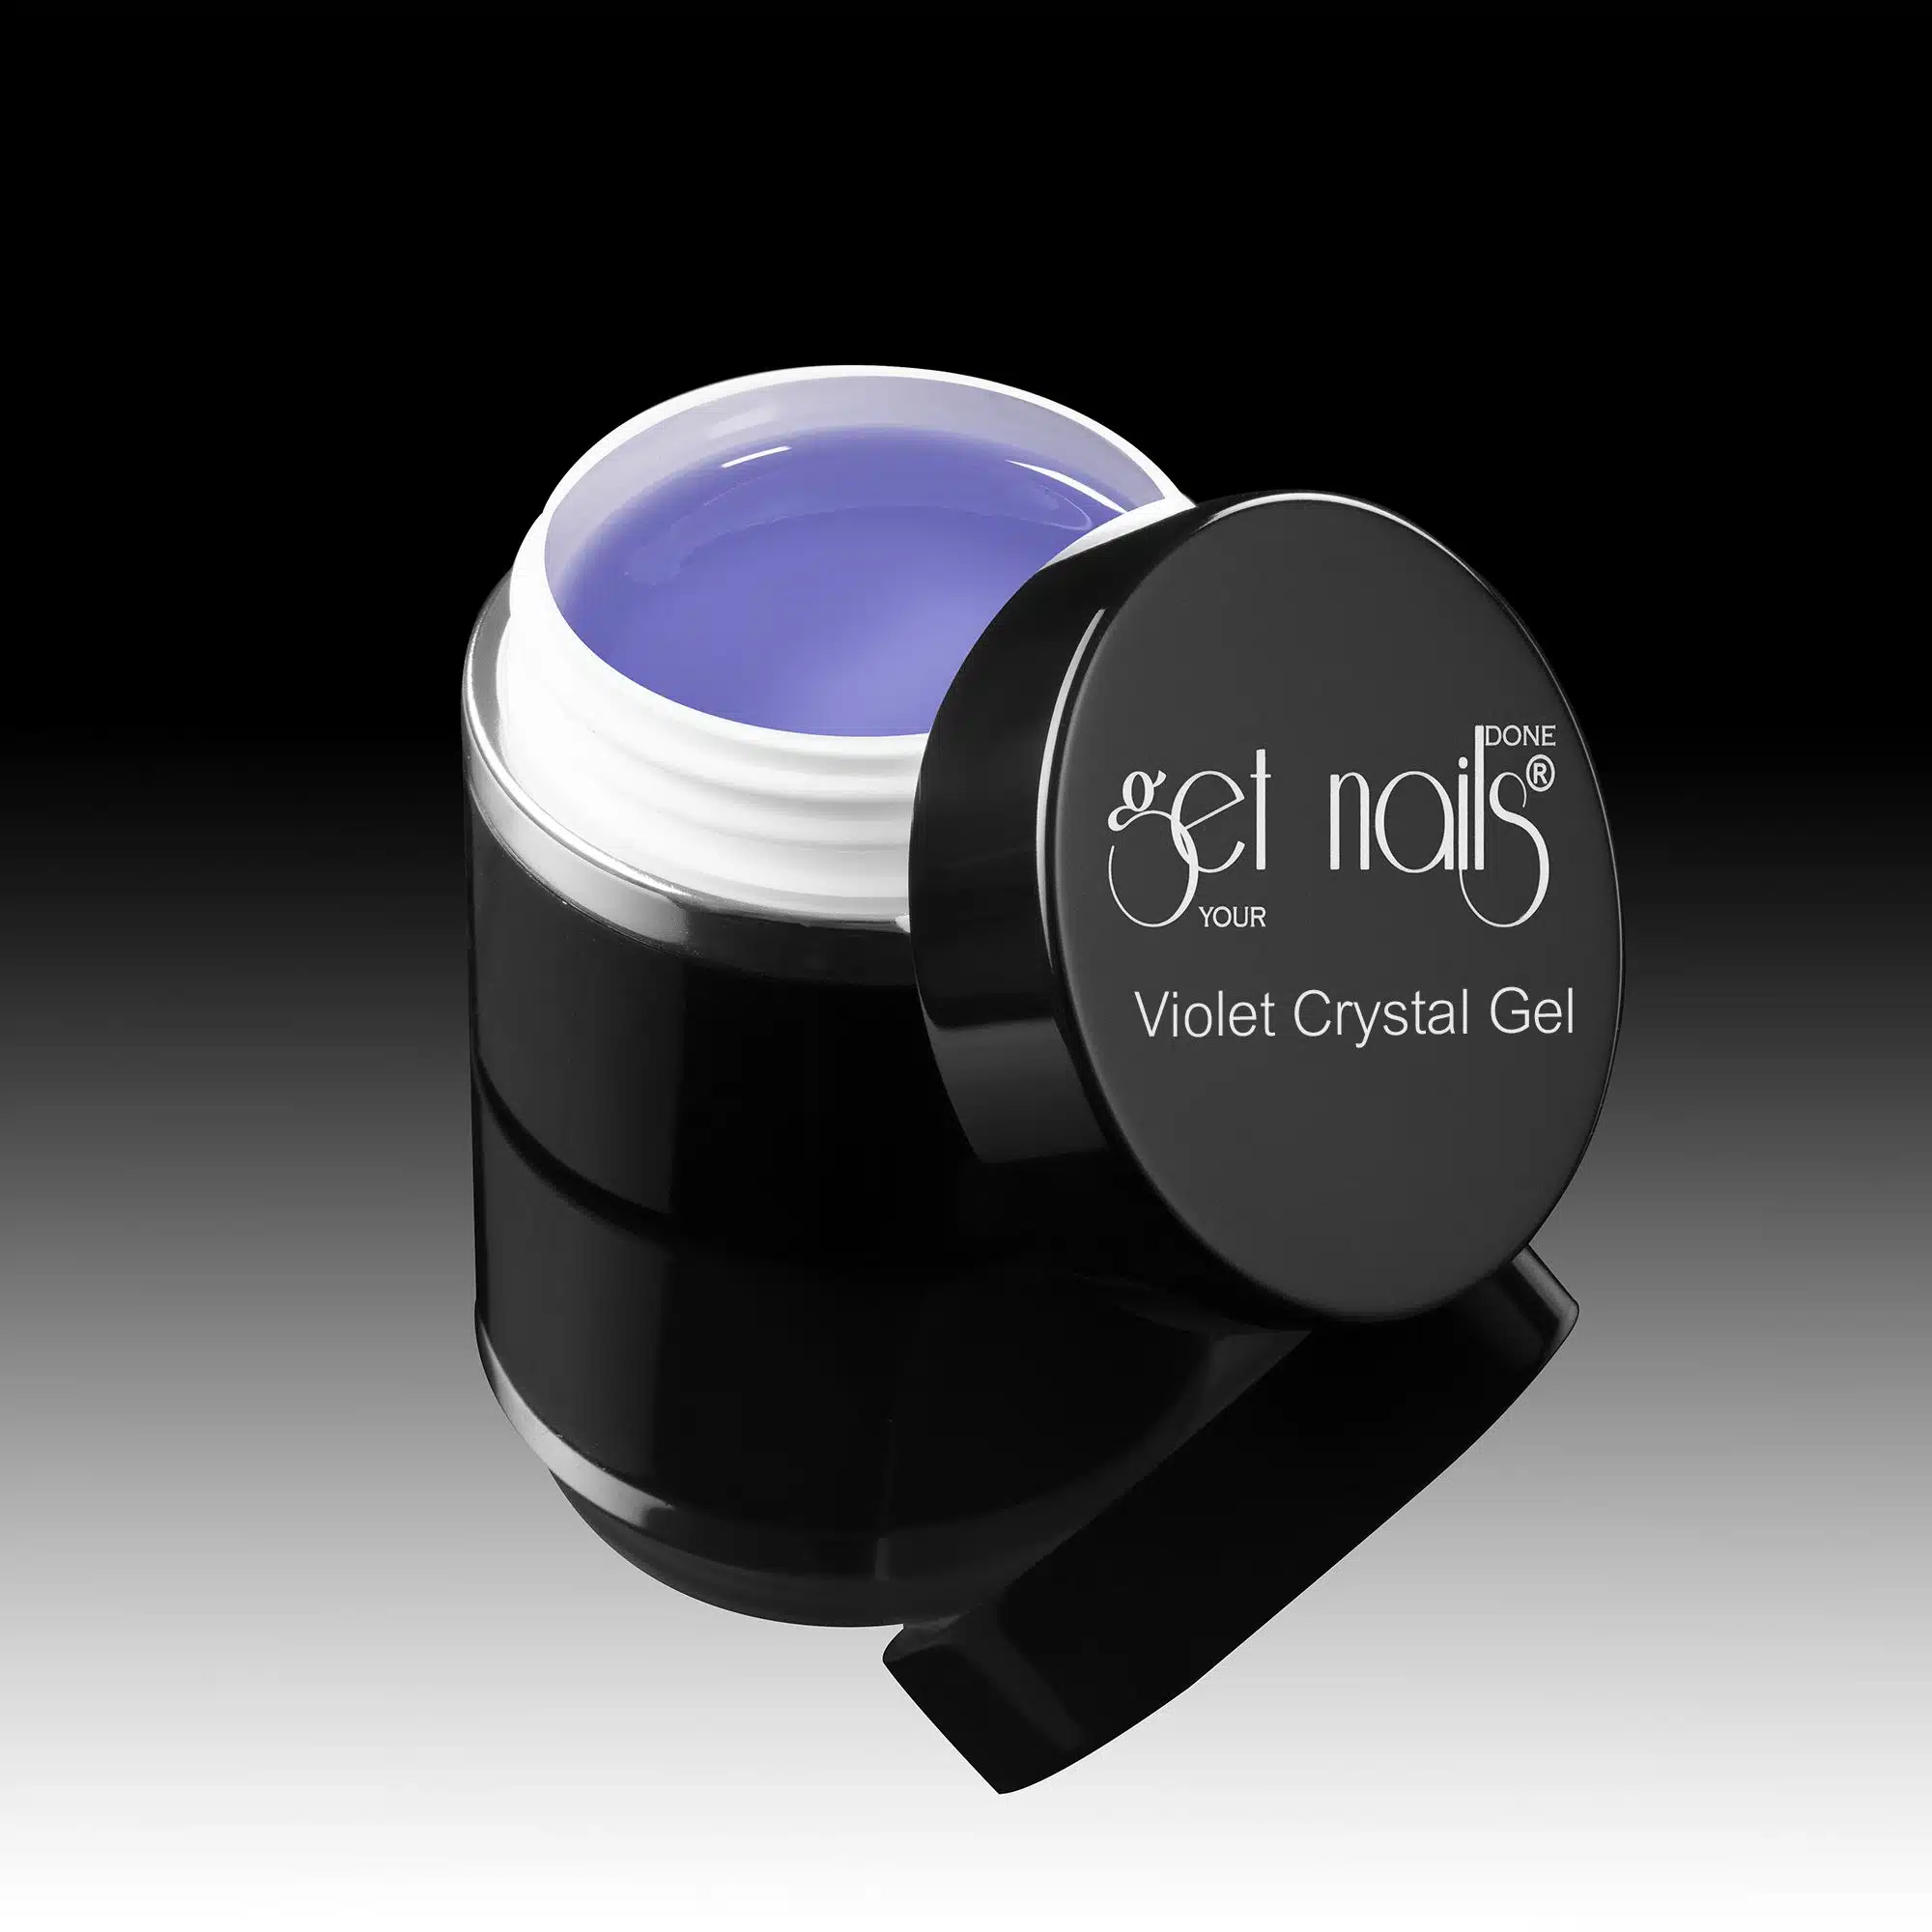 Get Nails Austria - 3 in 1 Violet Crystal Gel 50g